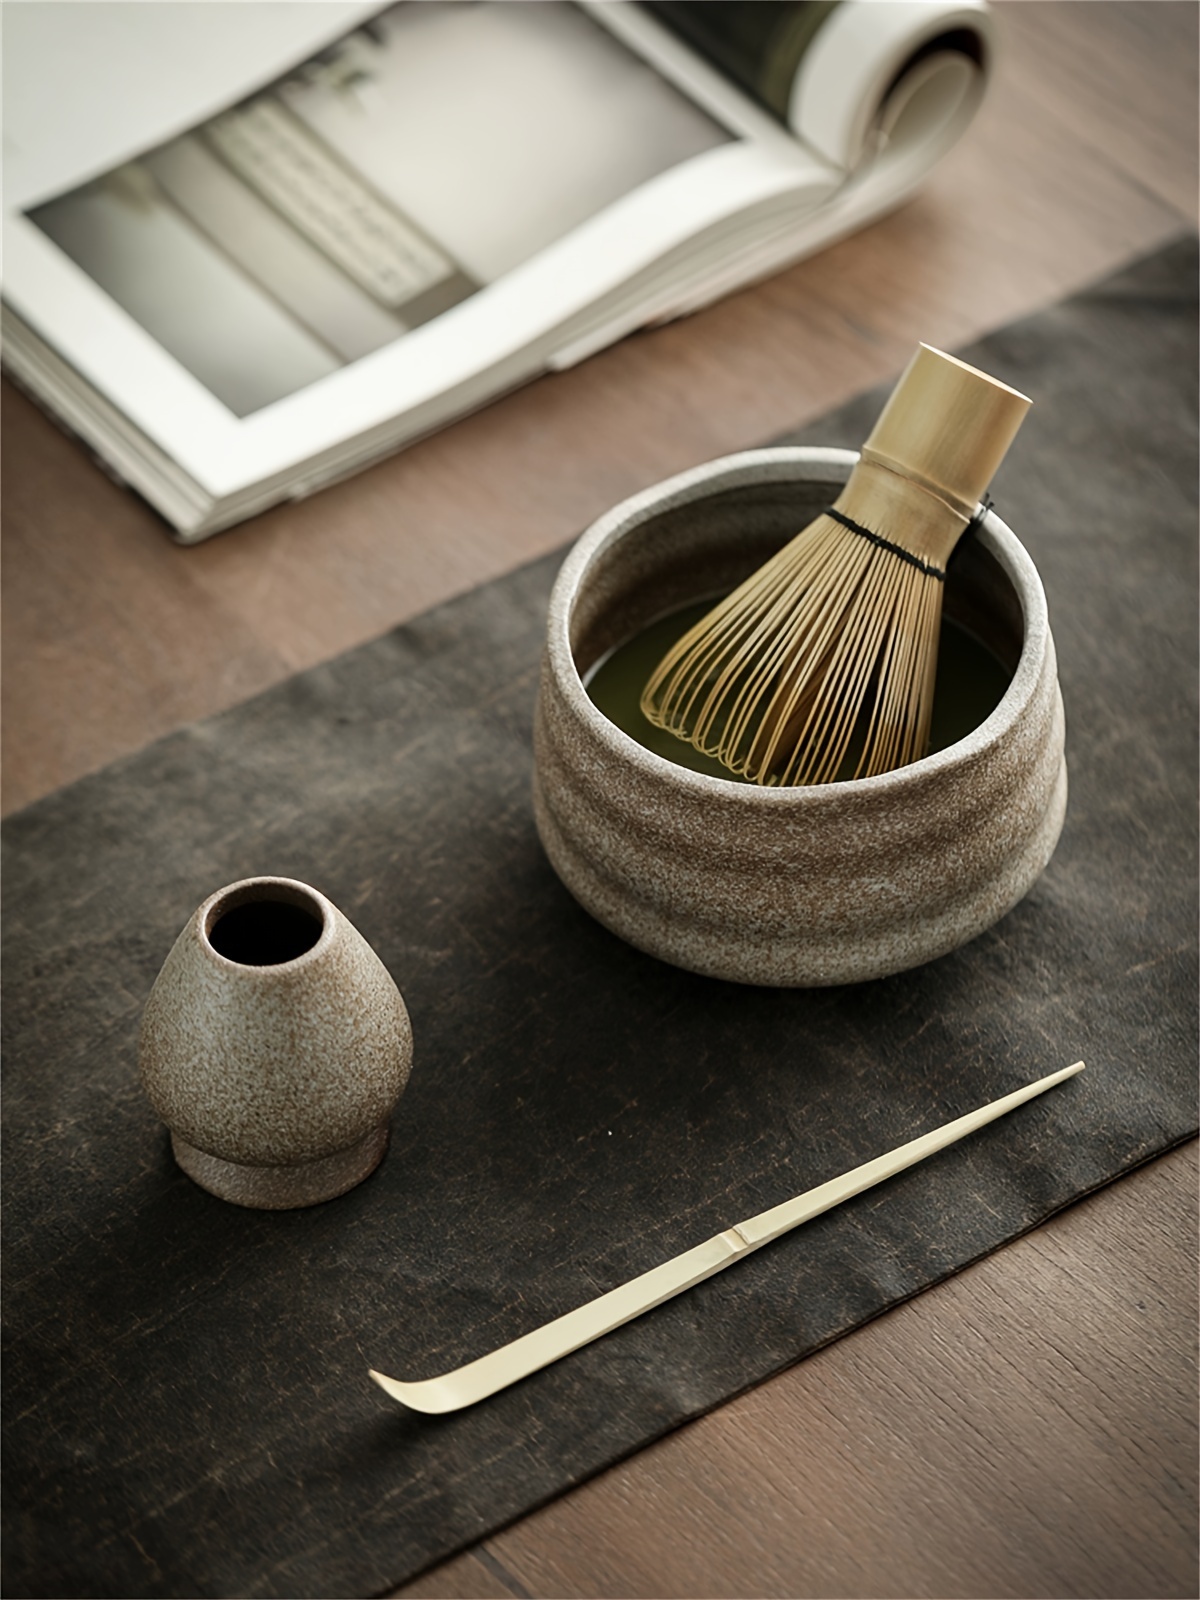 Matcha tea set made in Japan